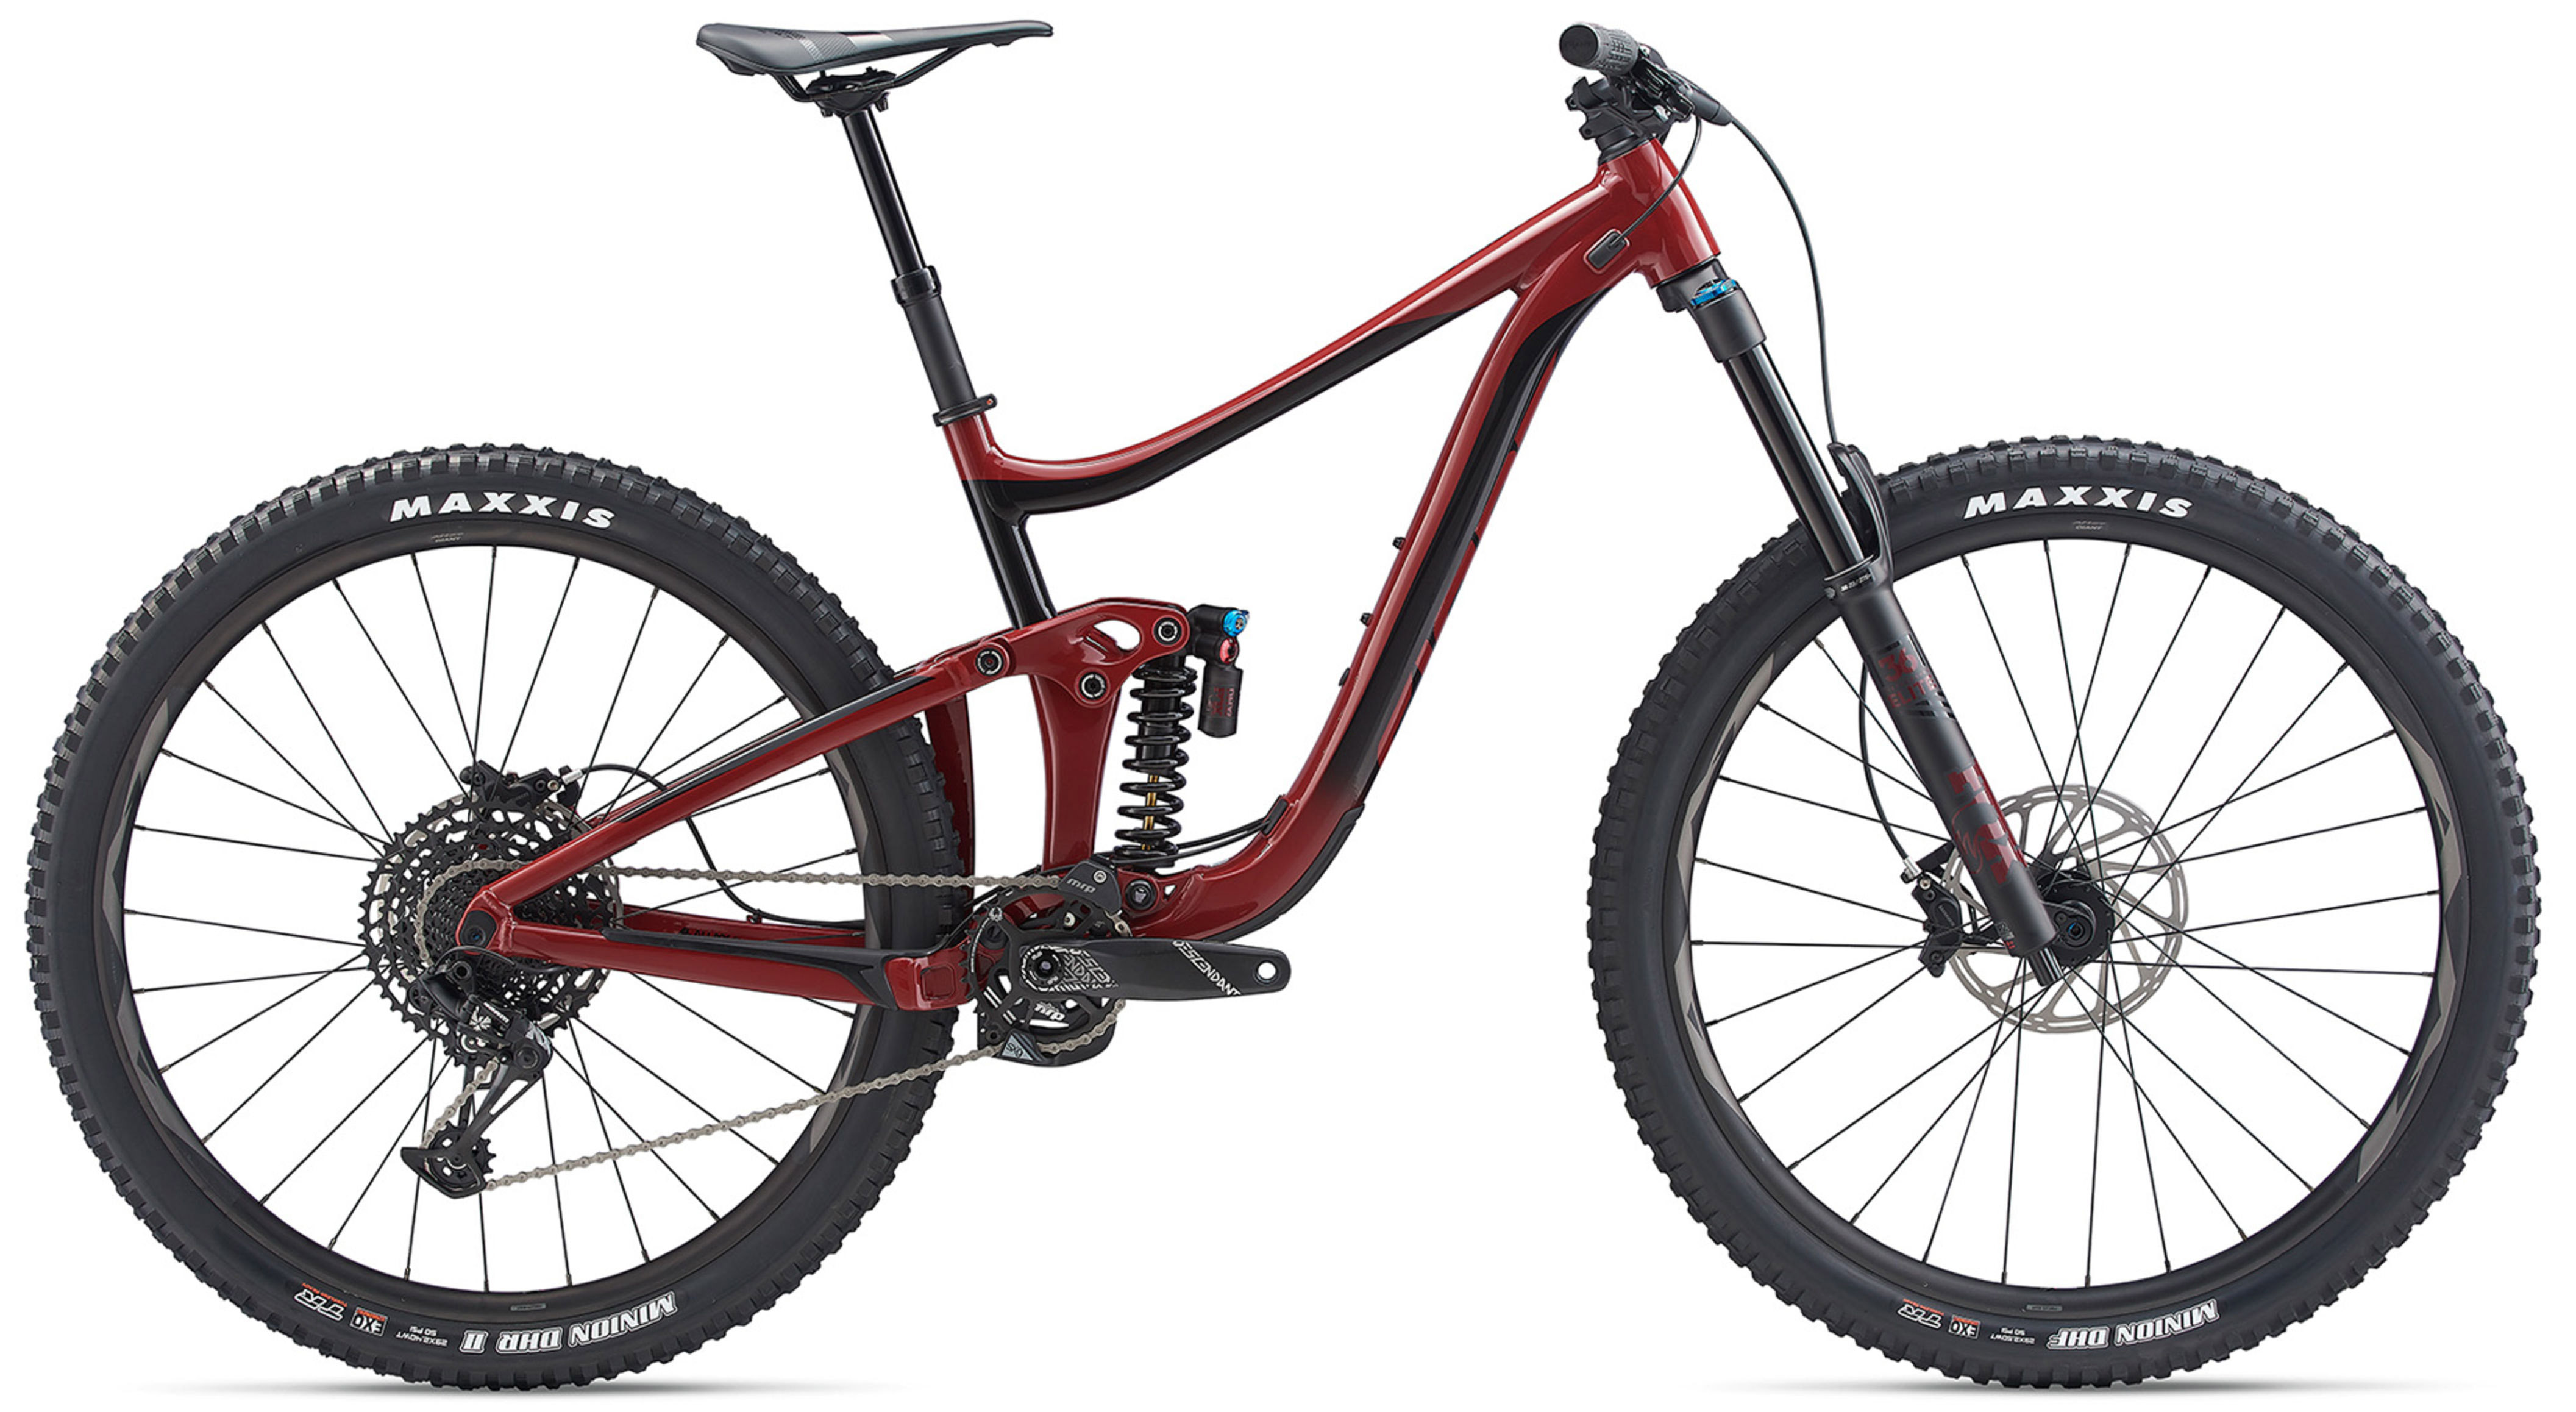  Отзывы о Двухподвесном велосипеде Giant Reign SX 29 2020